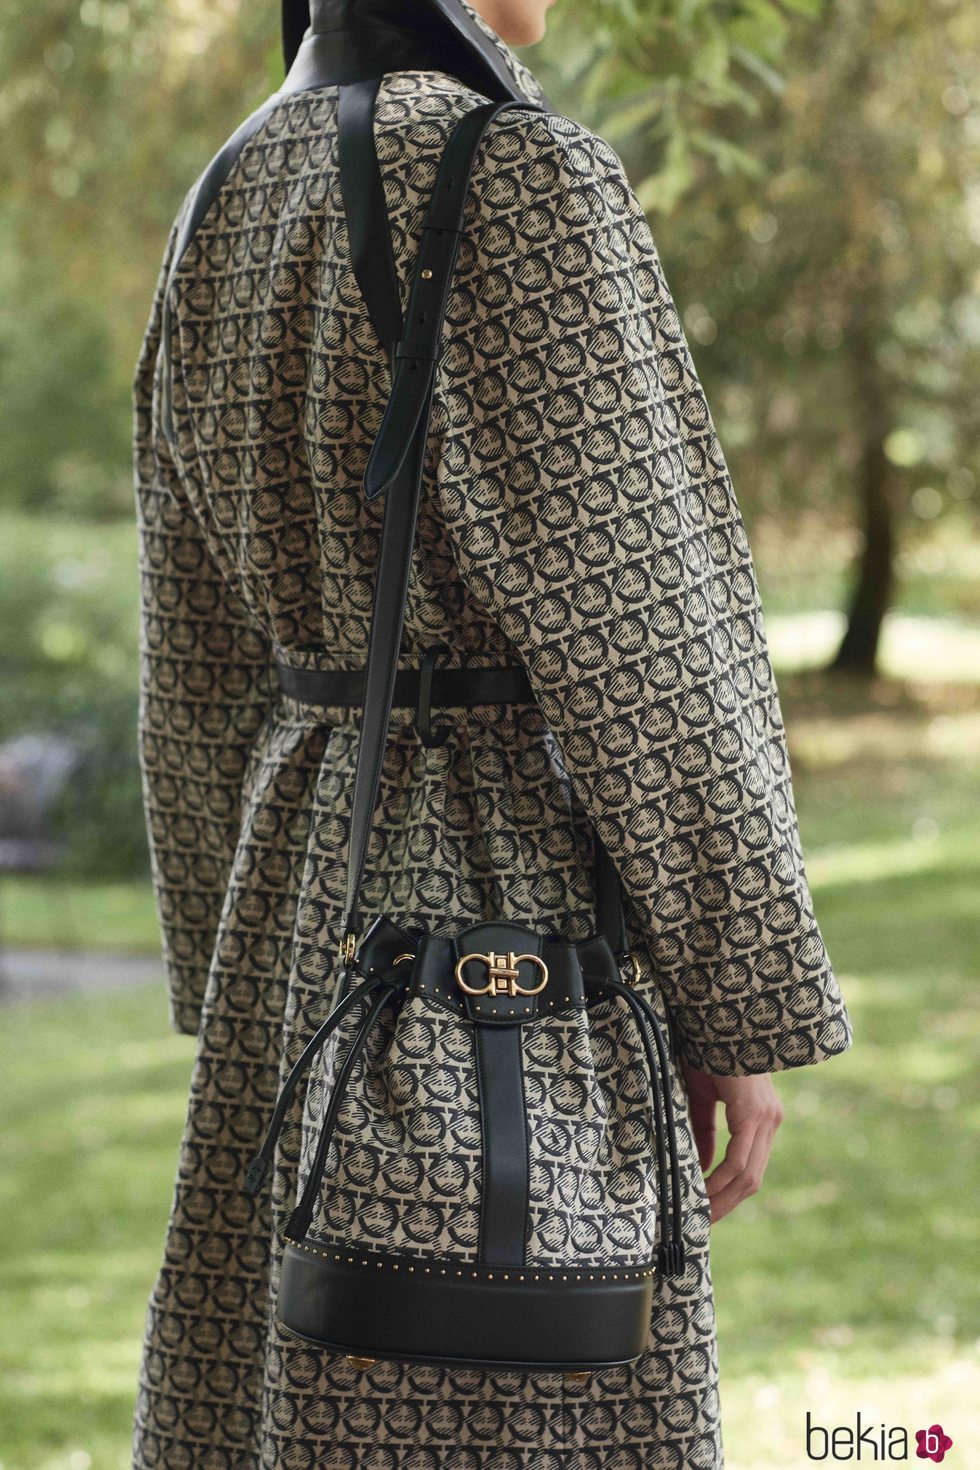 Abrigo y bolso con estampado geométrico  de la colección primavera/verano 2019 de Salvatore Ferragamo